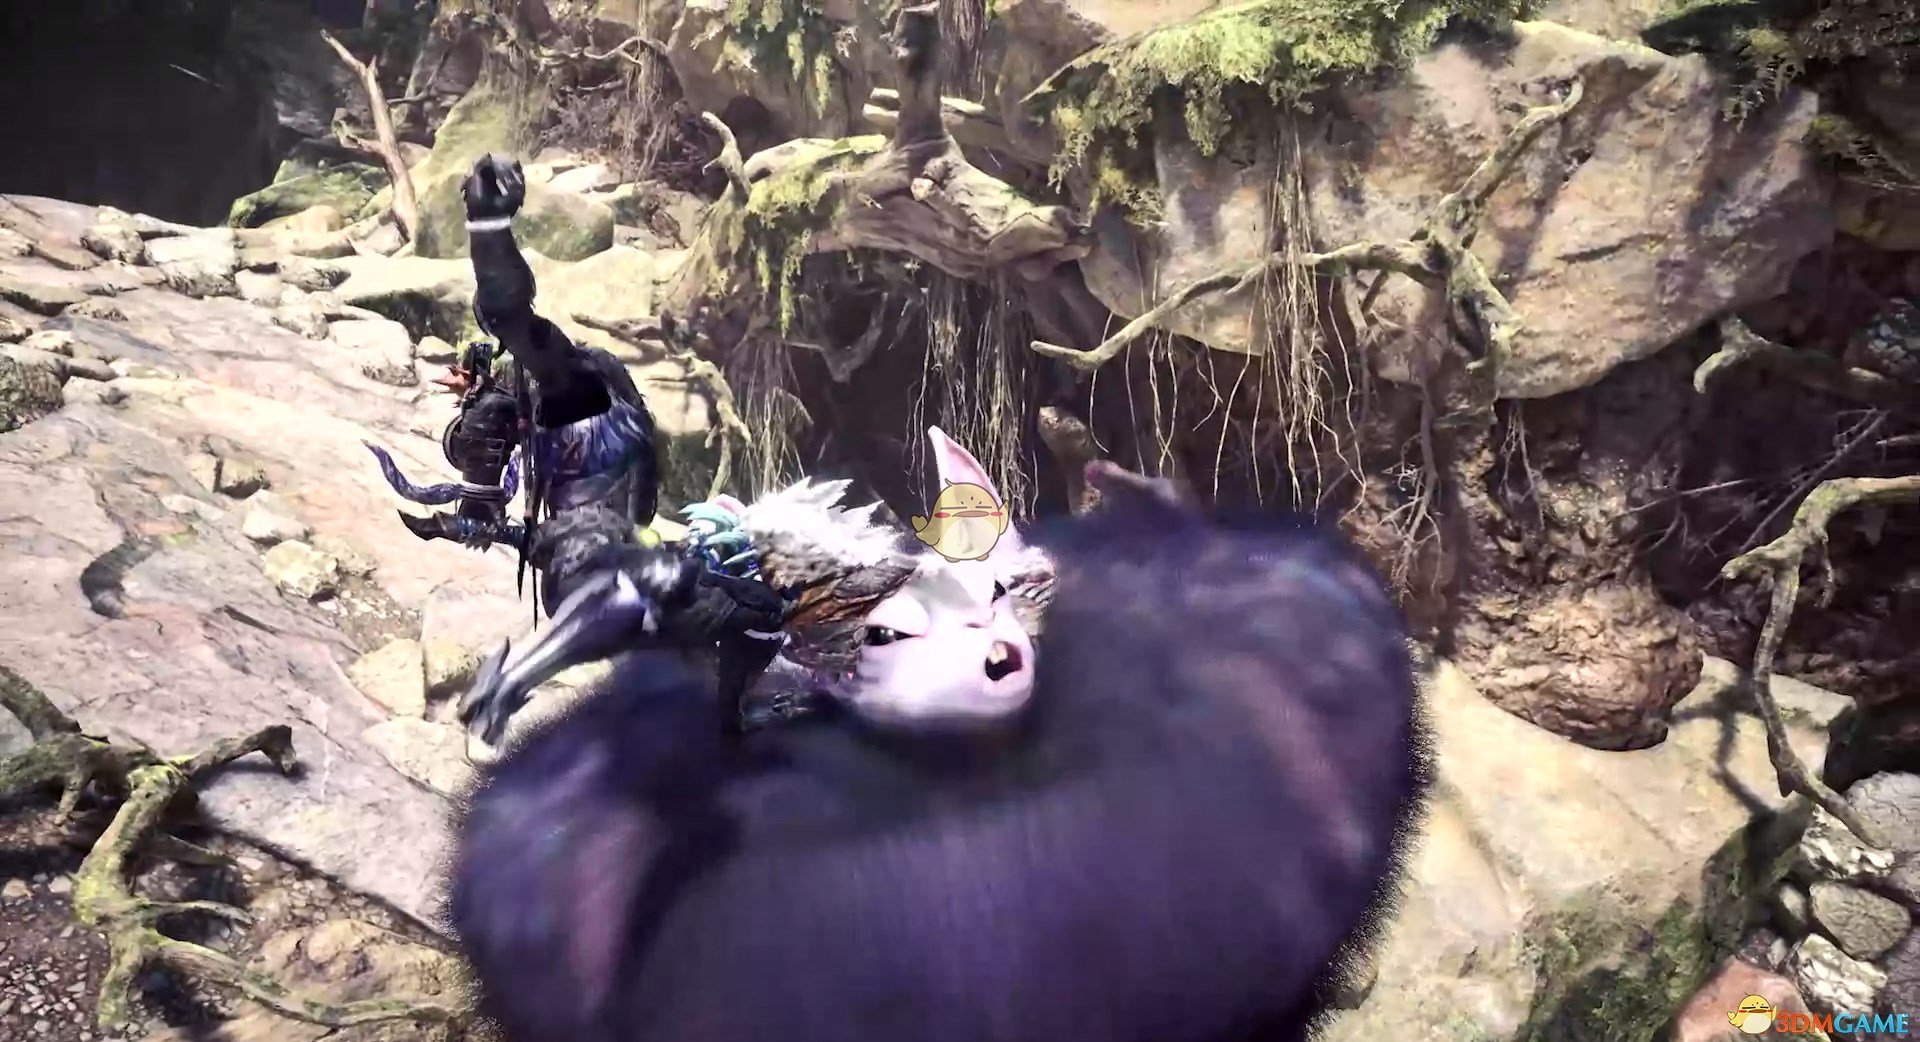 《怪物猎人：世界》冰原DLC片手剑精准突击使用技巧分享